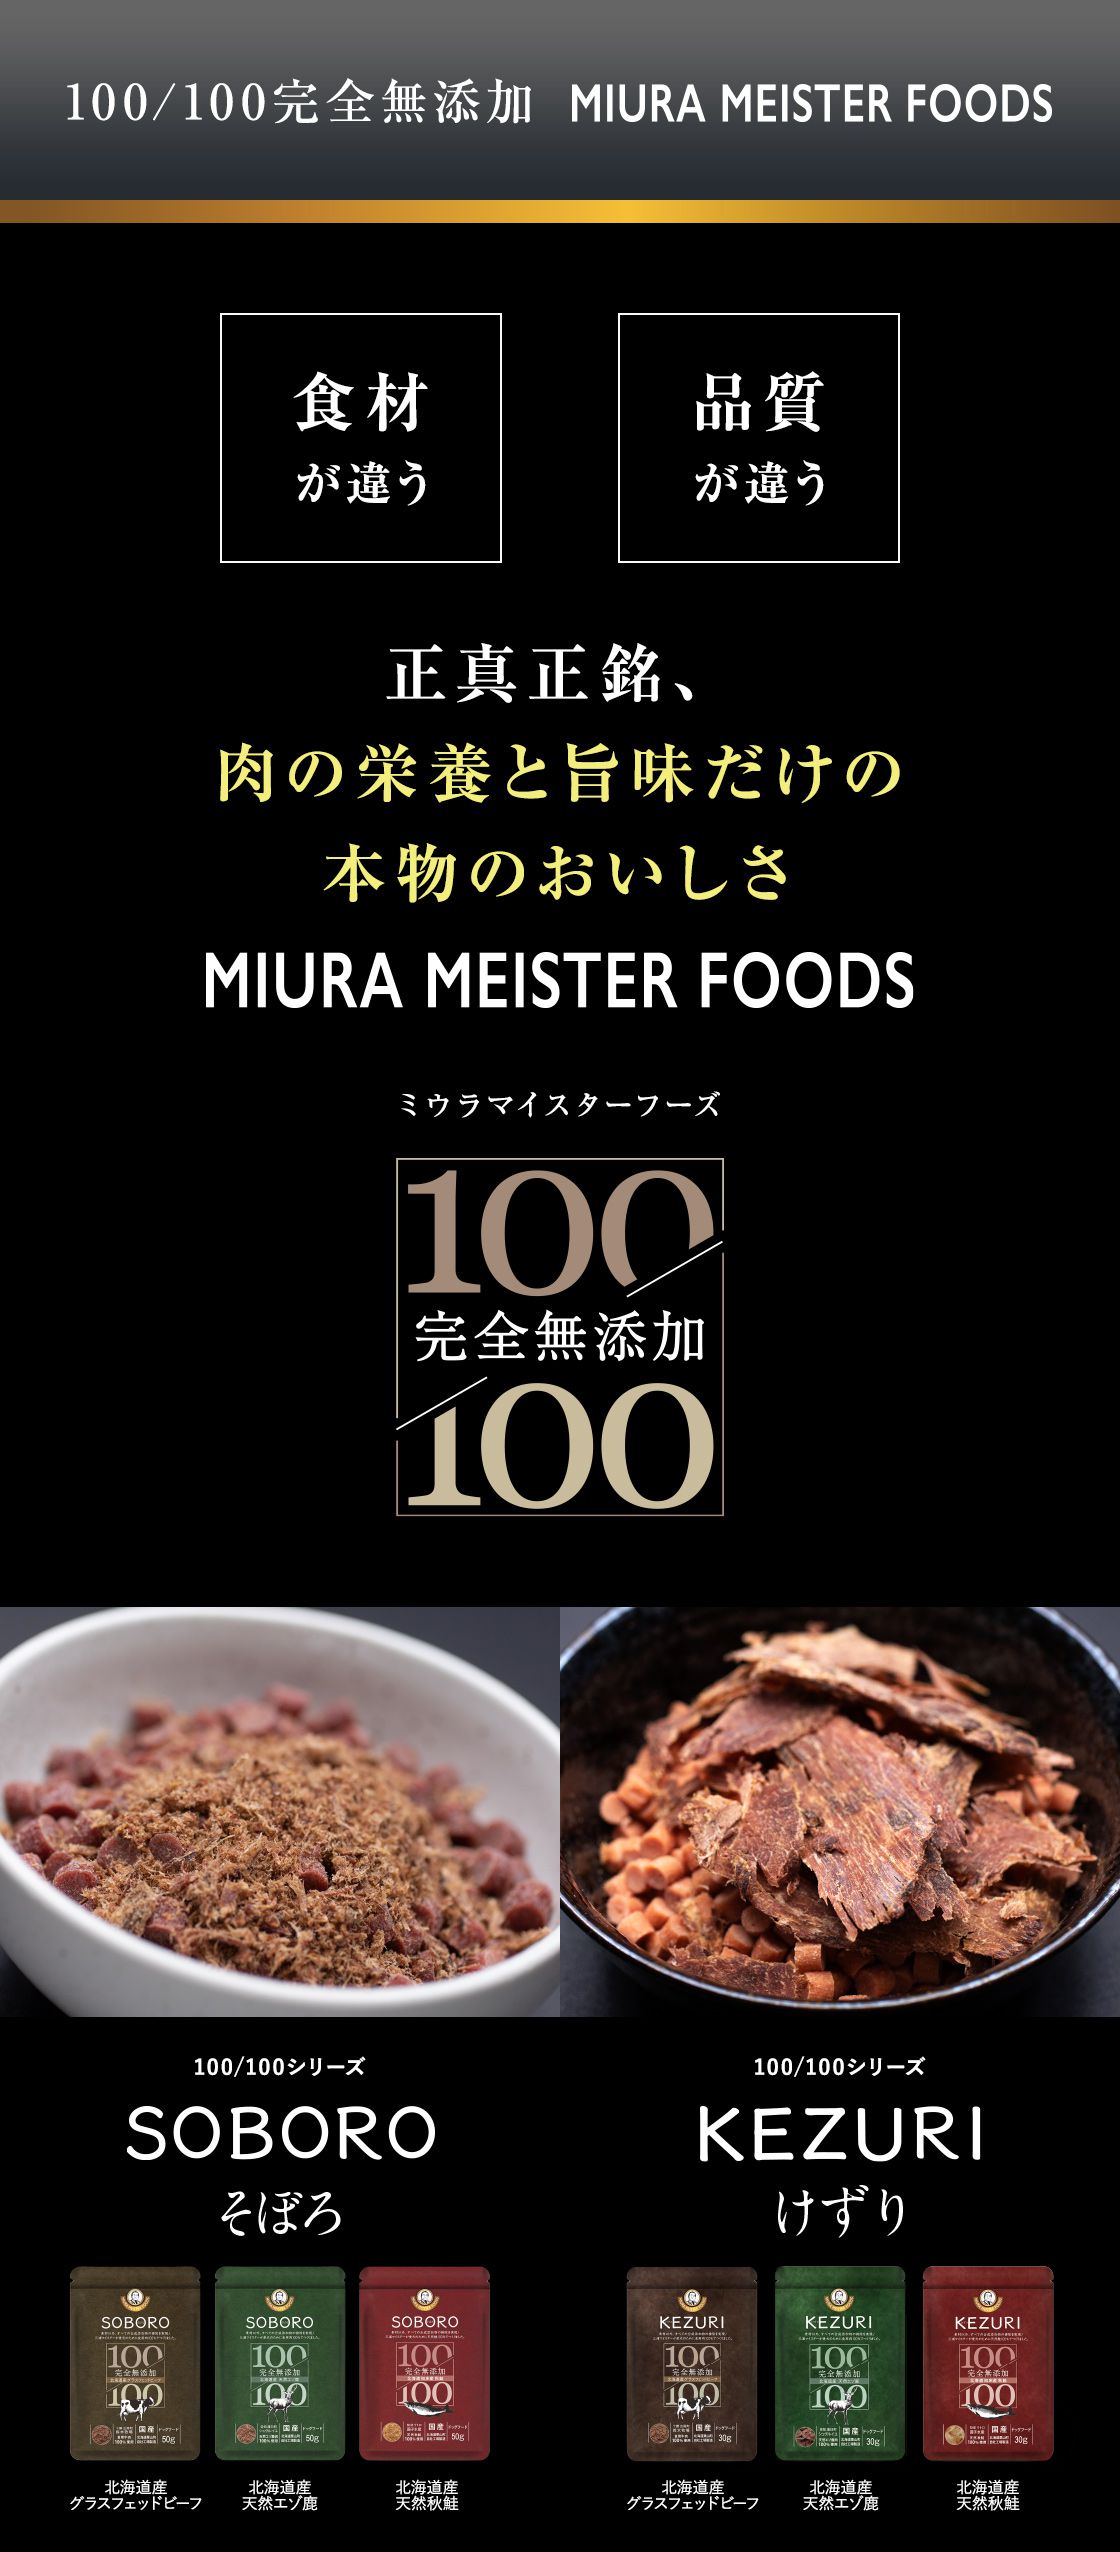 100/100完全無添加 MIURA MEISTER FOODS